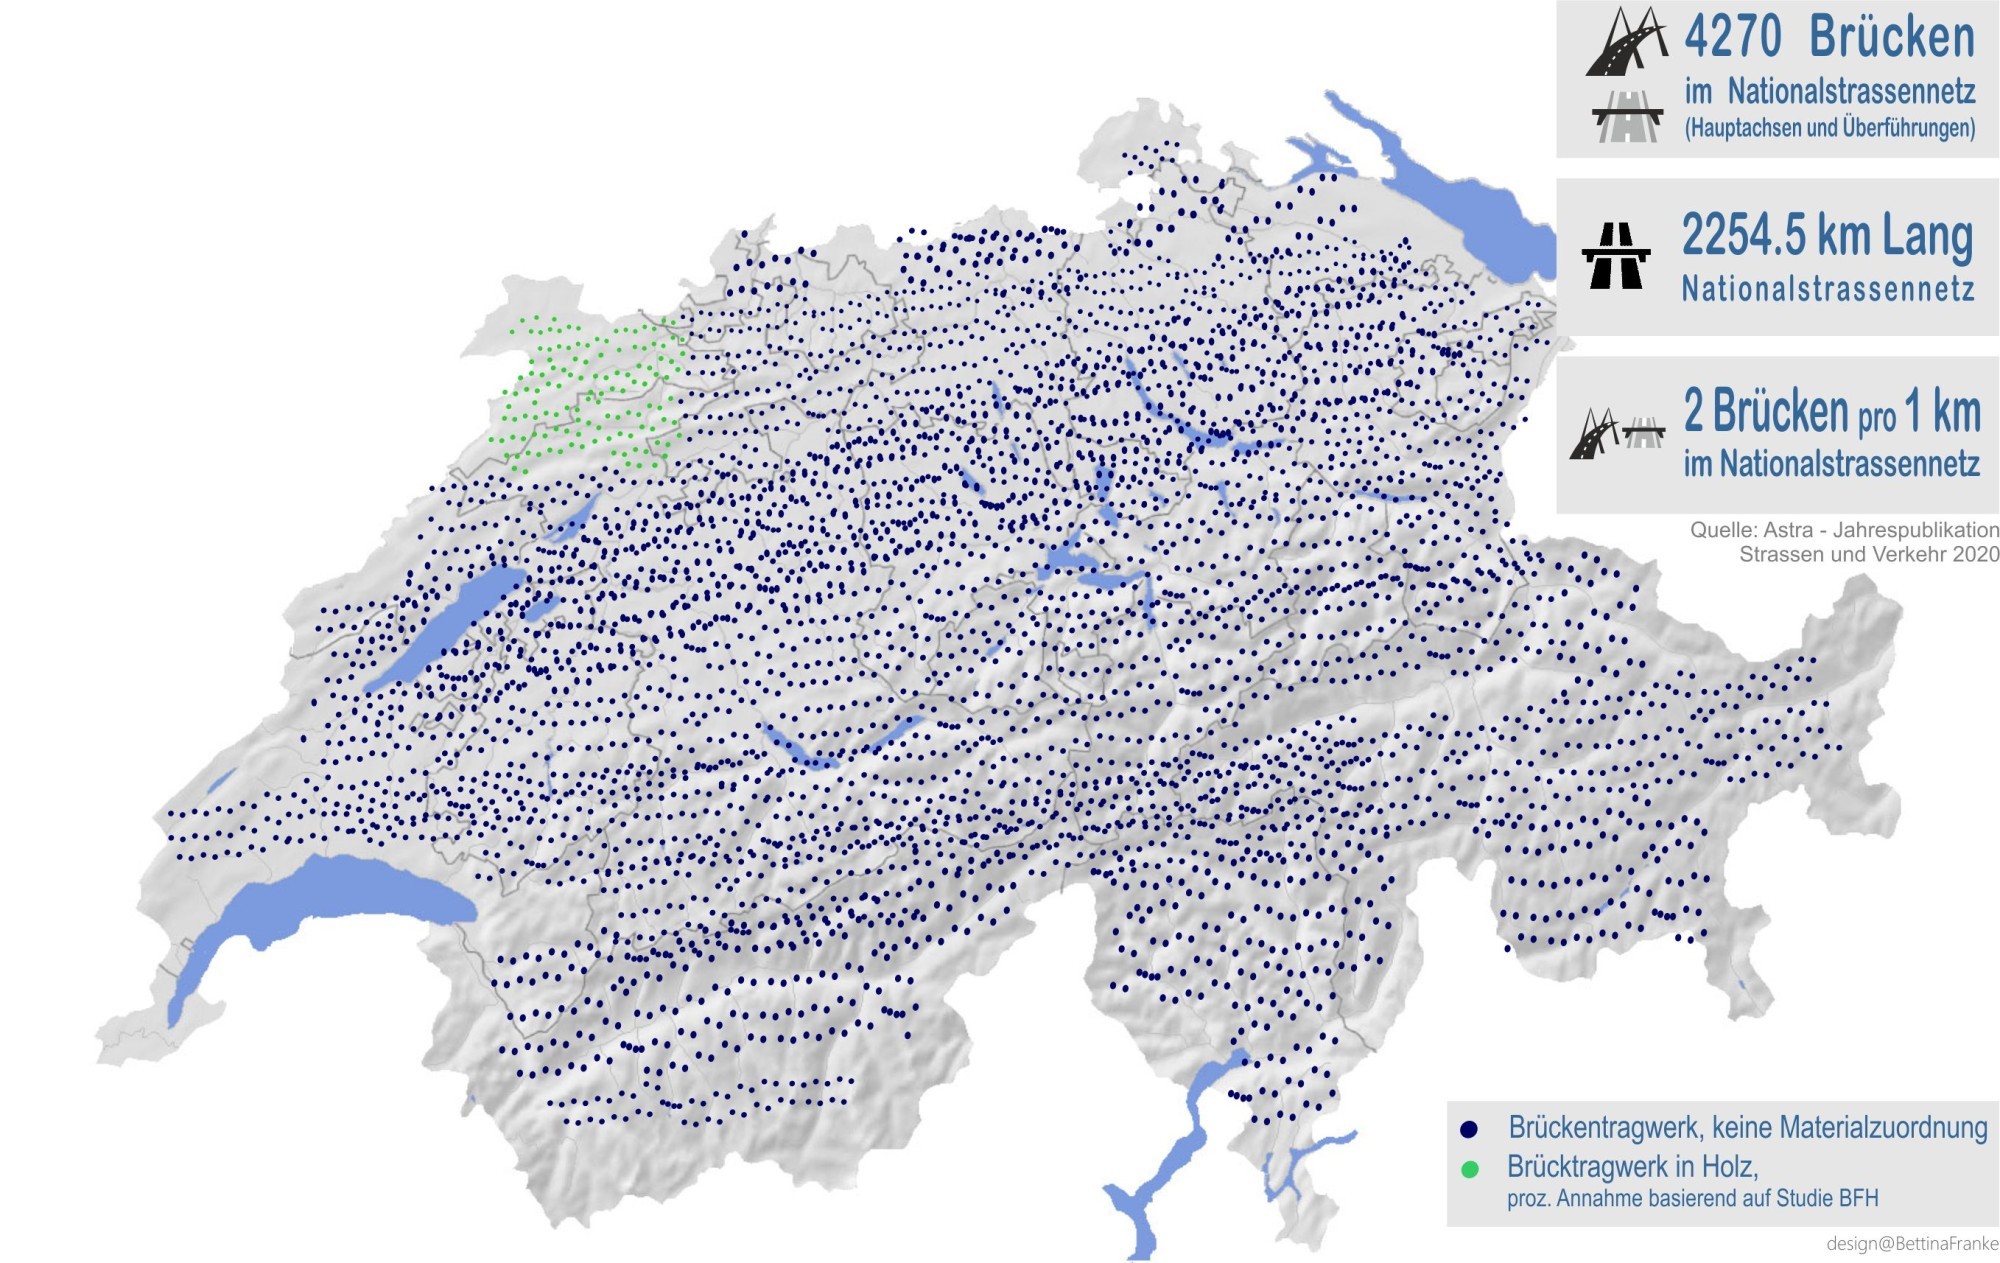 Visualisierung Anzahl Brückentragwerke im Schweizer Nationalstrassennetz